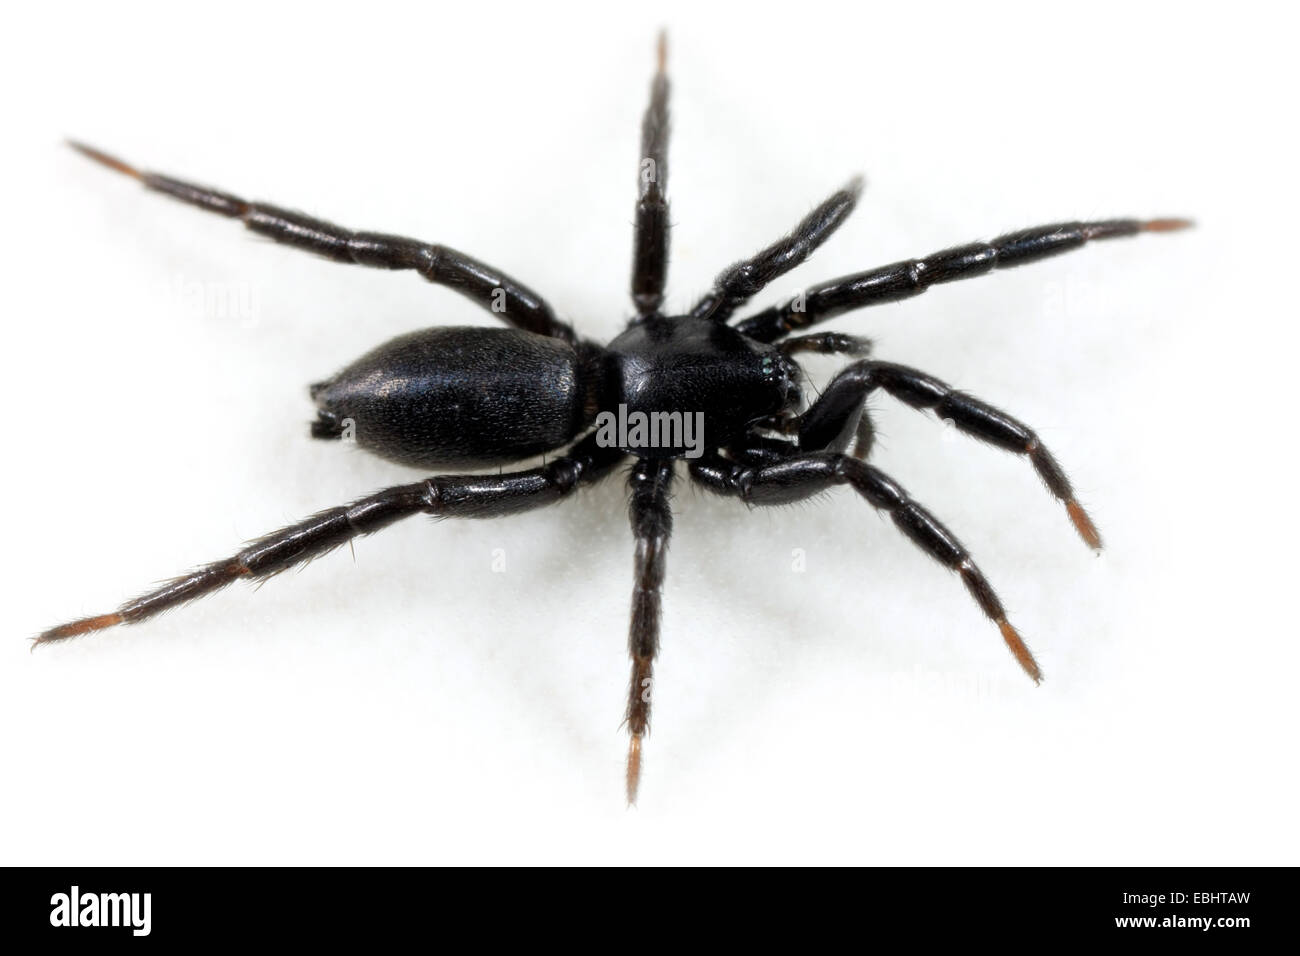 Une femelle (zélote latreillei) araignée sur fond blanc. L'araignée fait partie de la famille des Gnaphosidae, la masse des araignées. Banque D'Images